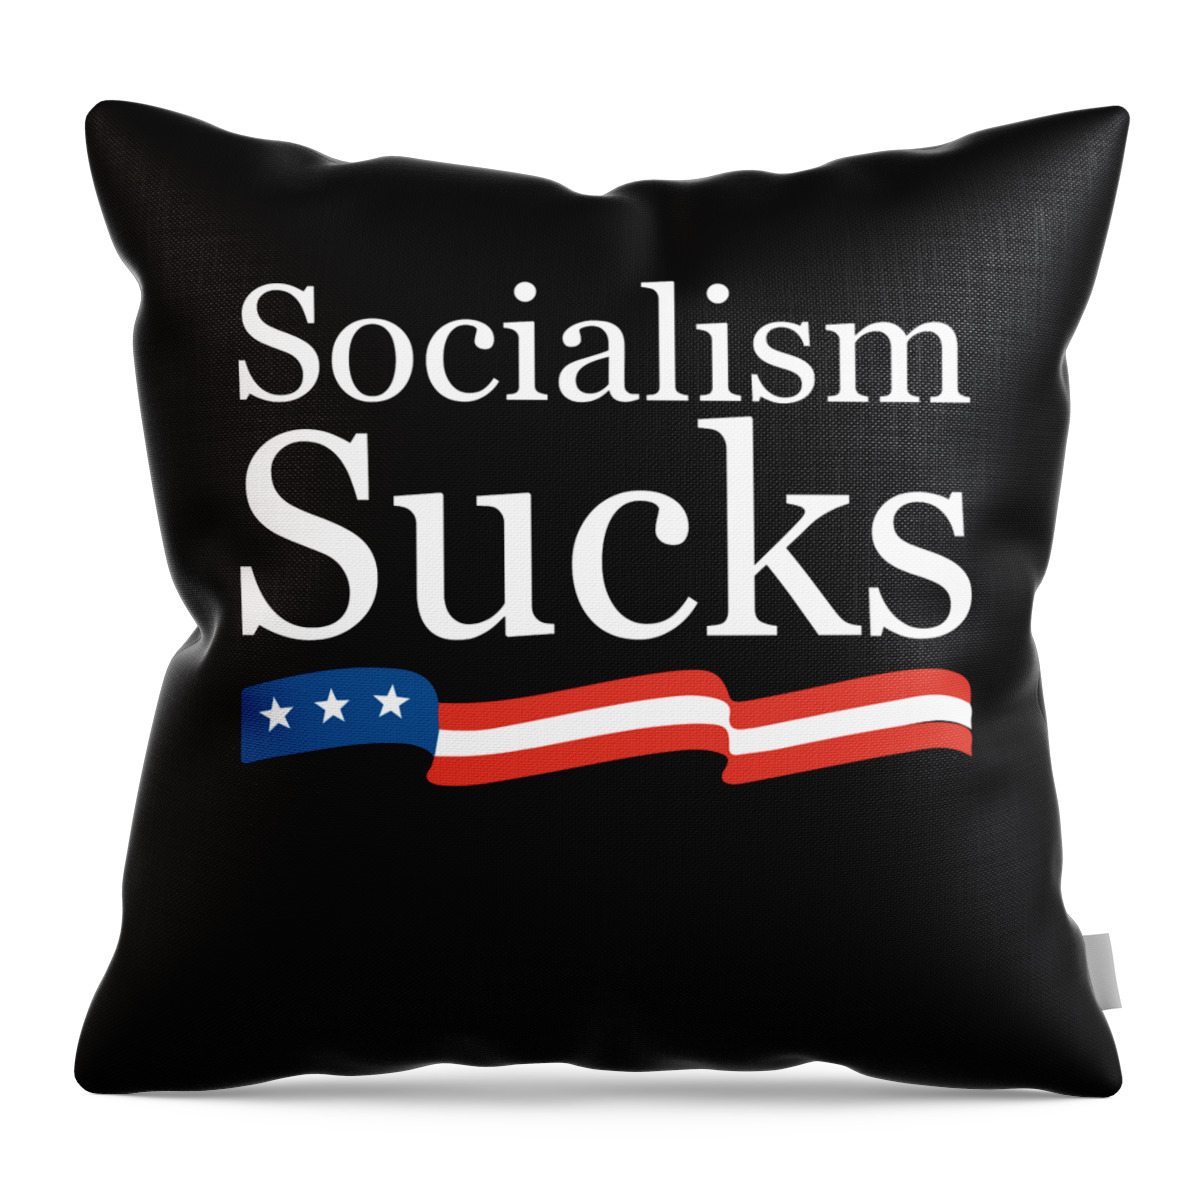 Cool Throw Pillow featuring the digital art Socialism Sucks by Flippin Sweet Gear